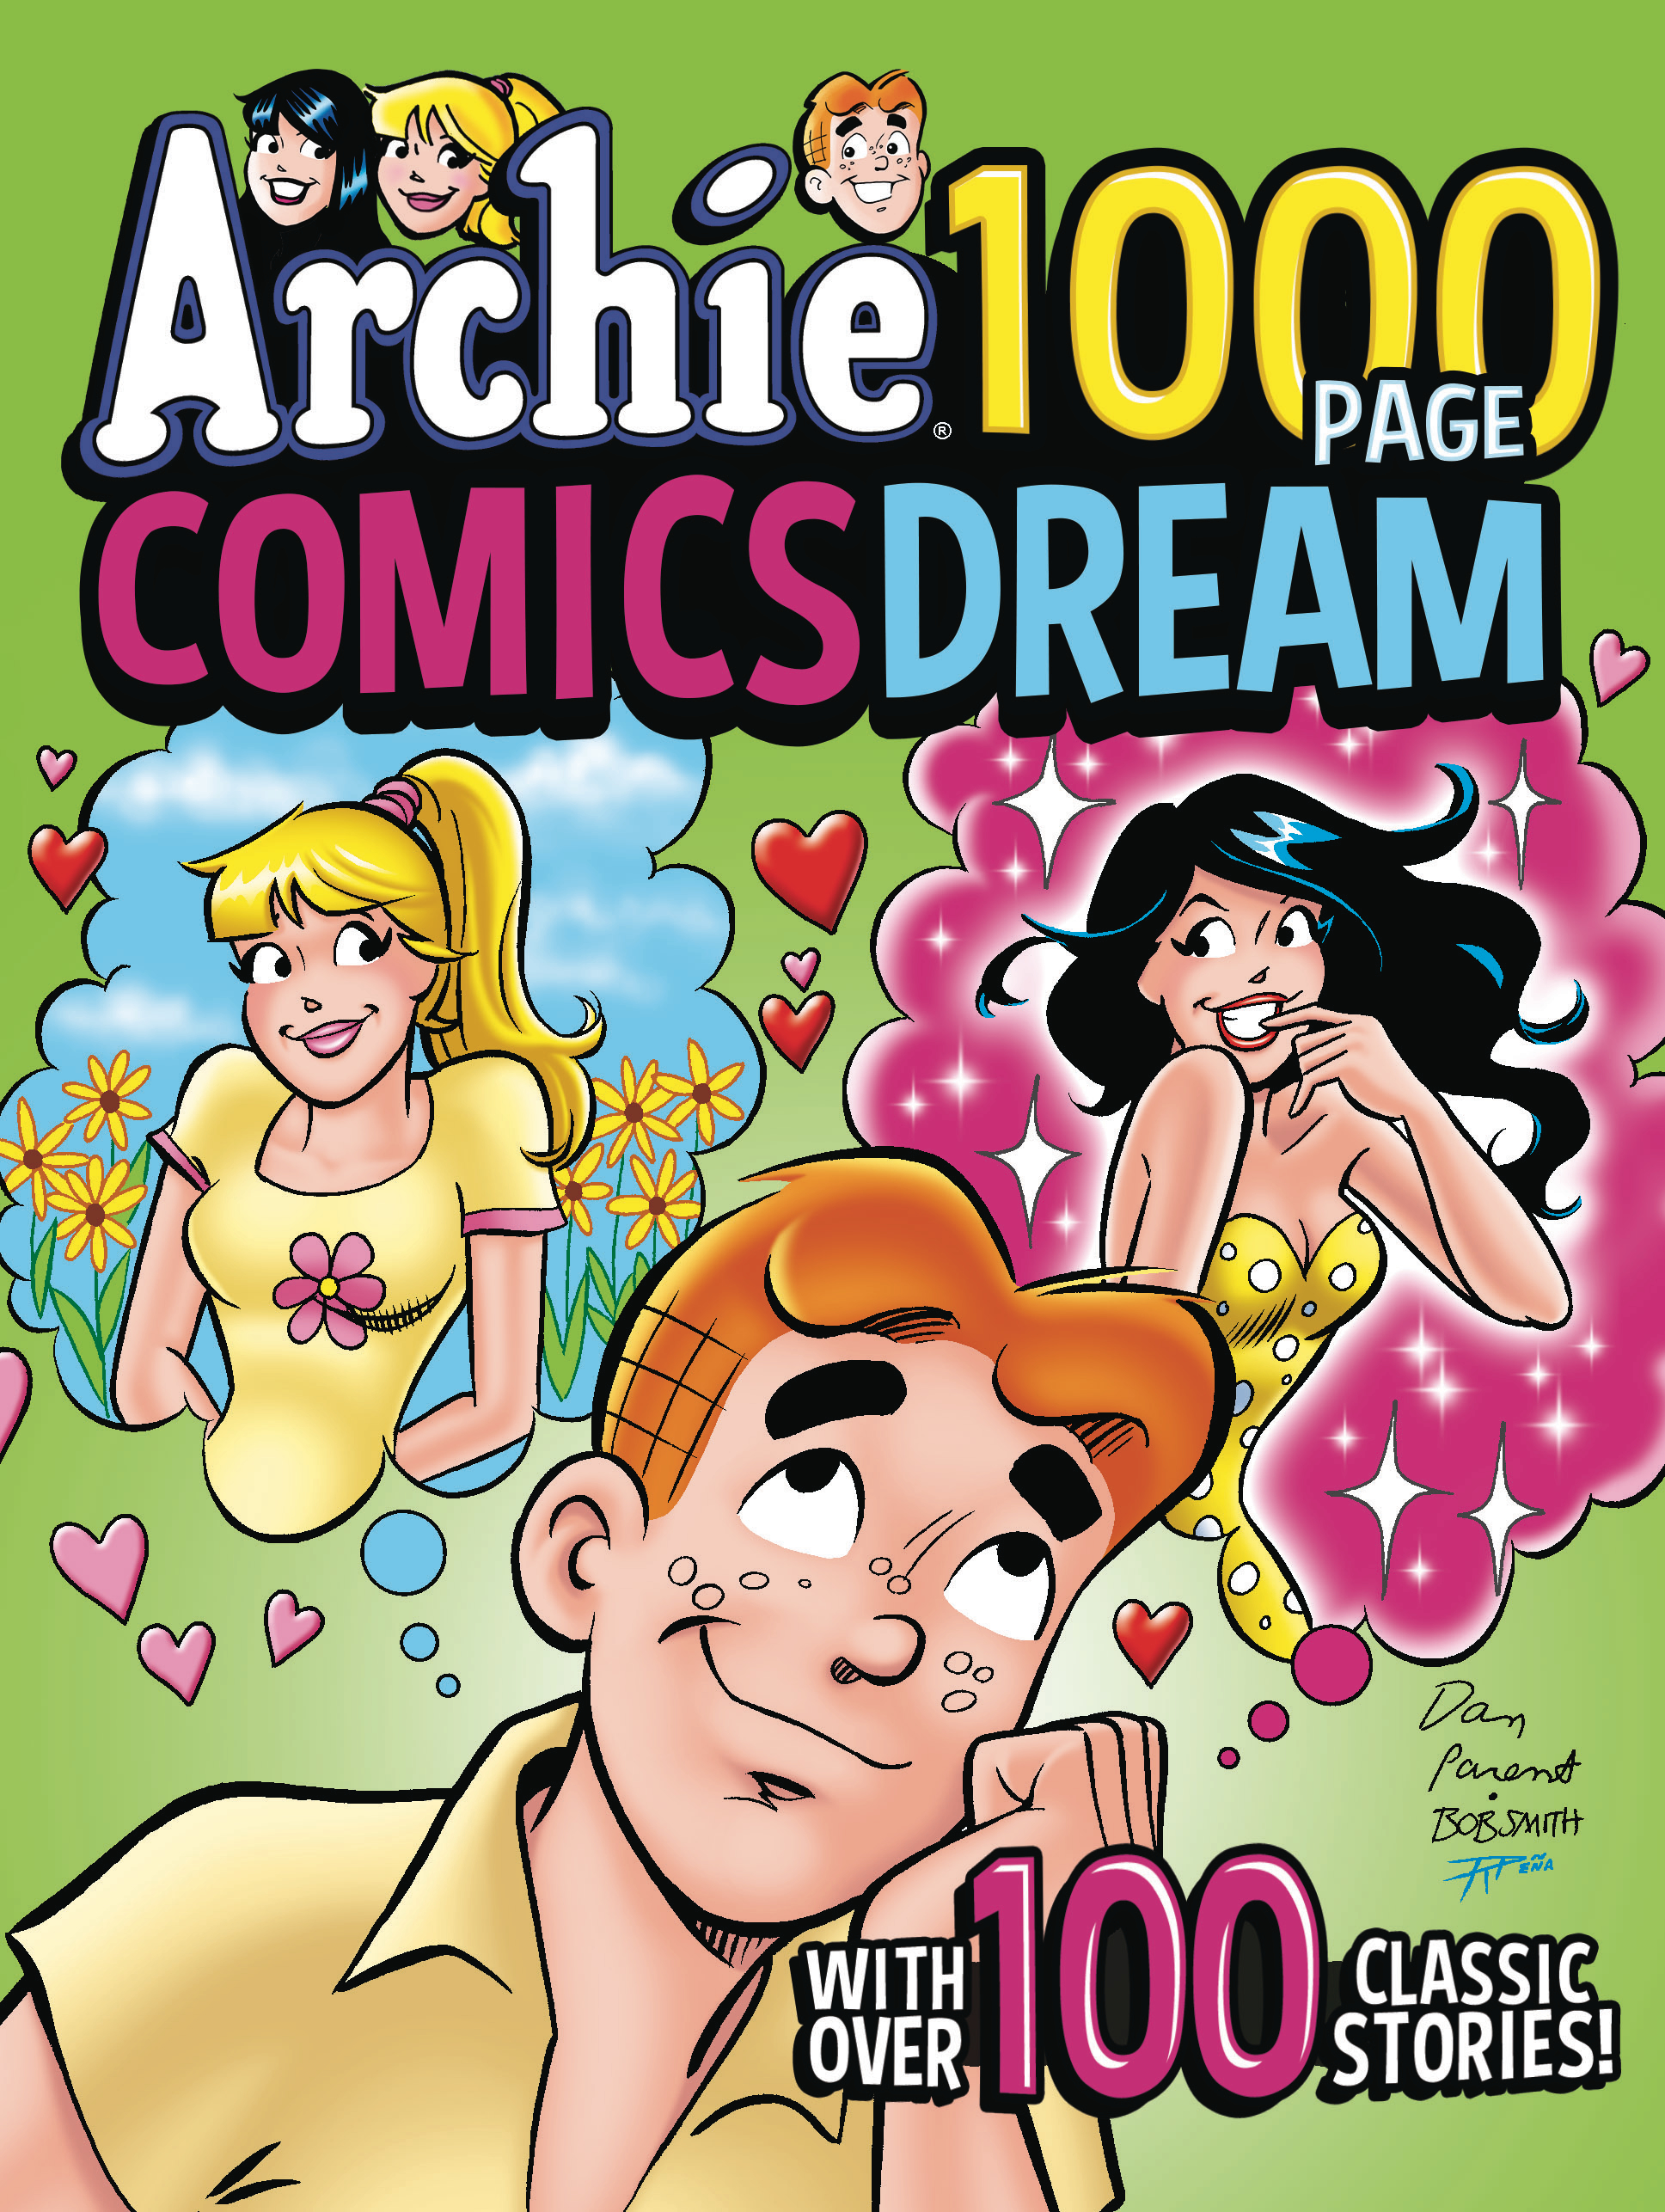 Archie 1000 Page Comics Dream Graphic Novel